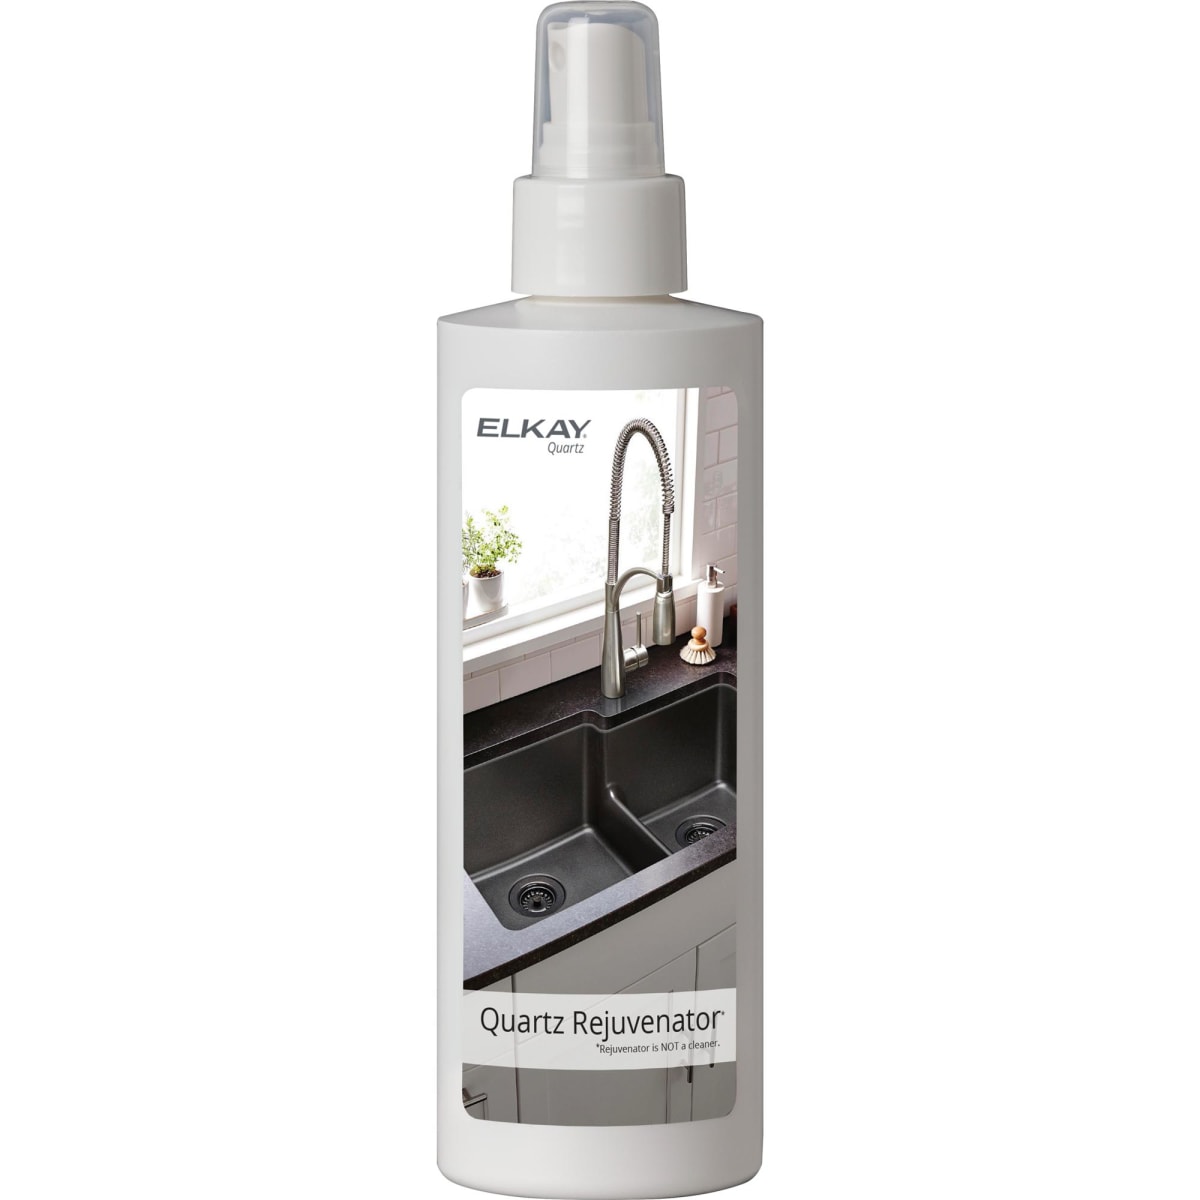 Kohler K-EC23723-NA N/A Kitchen & Bathroom Faucet Cleaner 